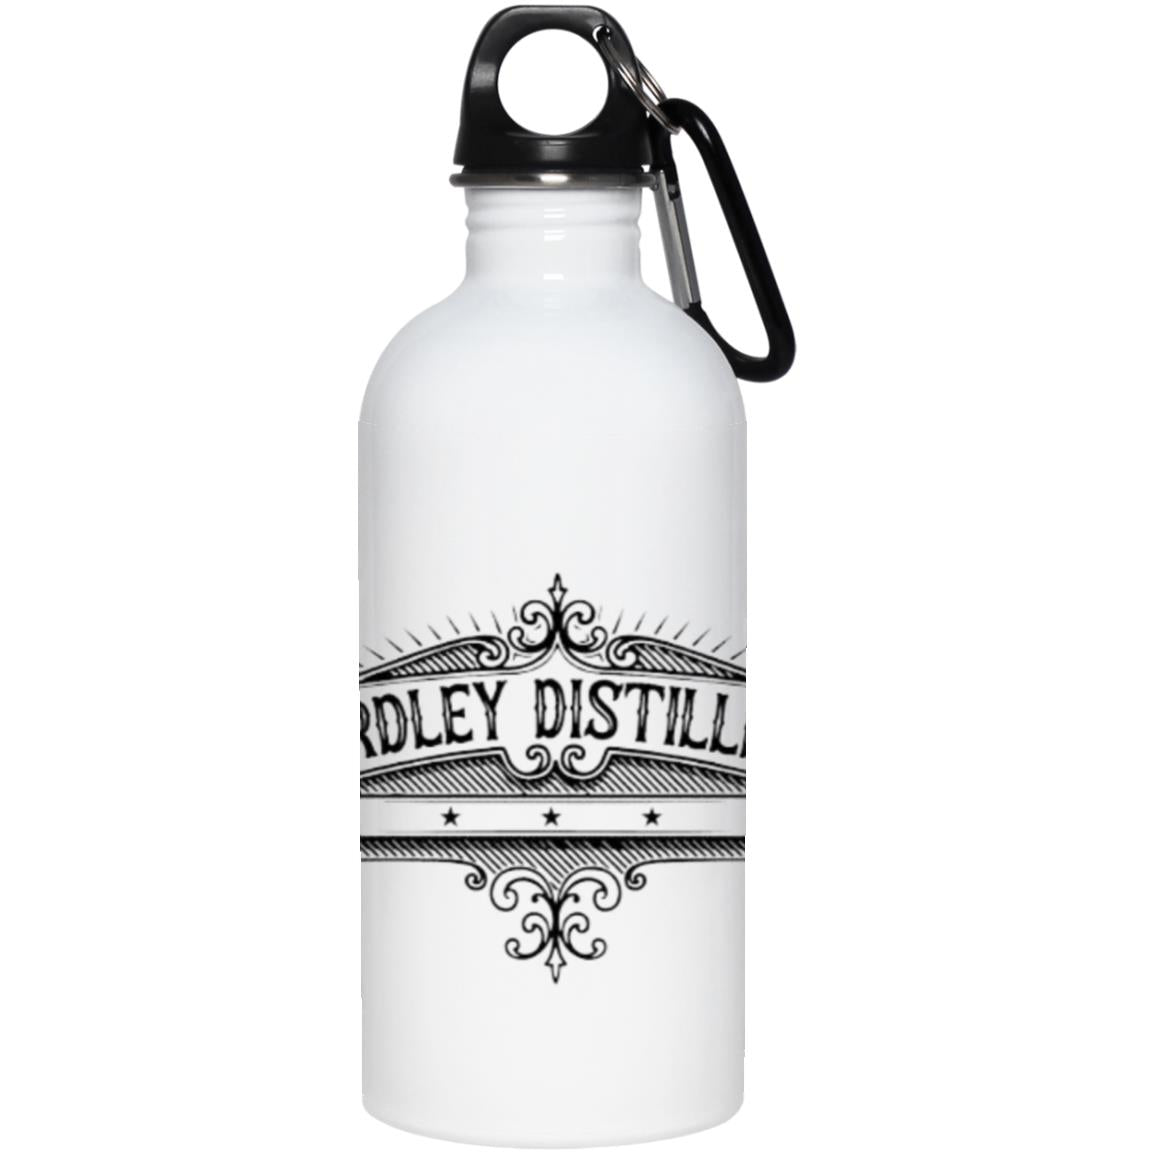 Yardley Distillery Logo 20oz. Stainless Steel Water Bottle